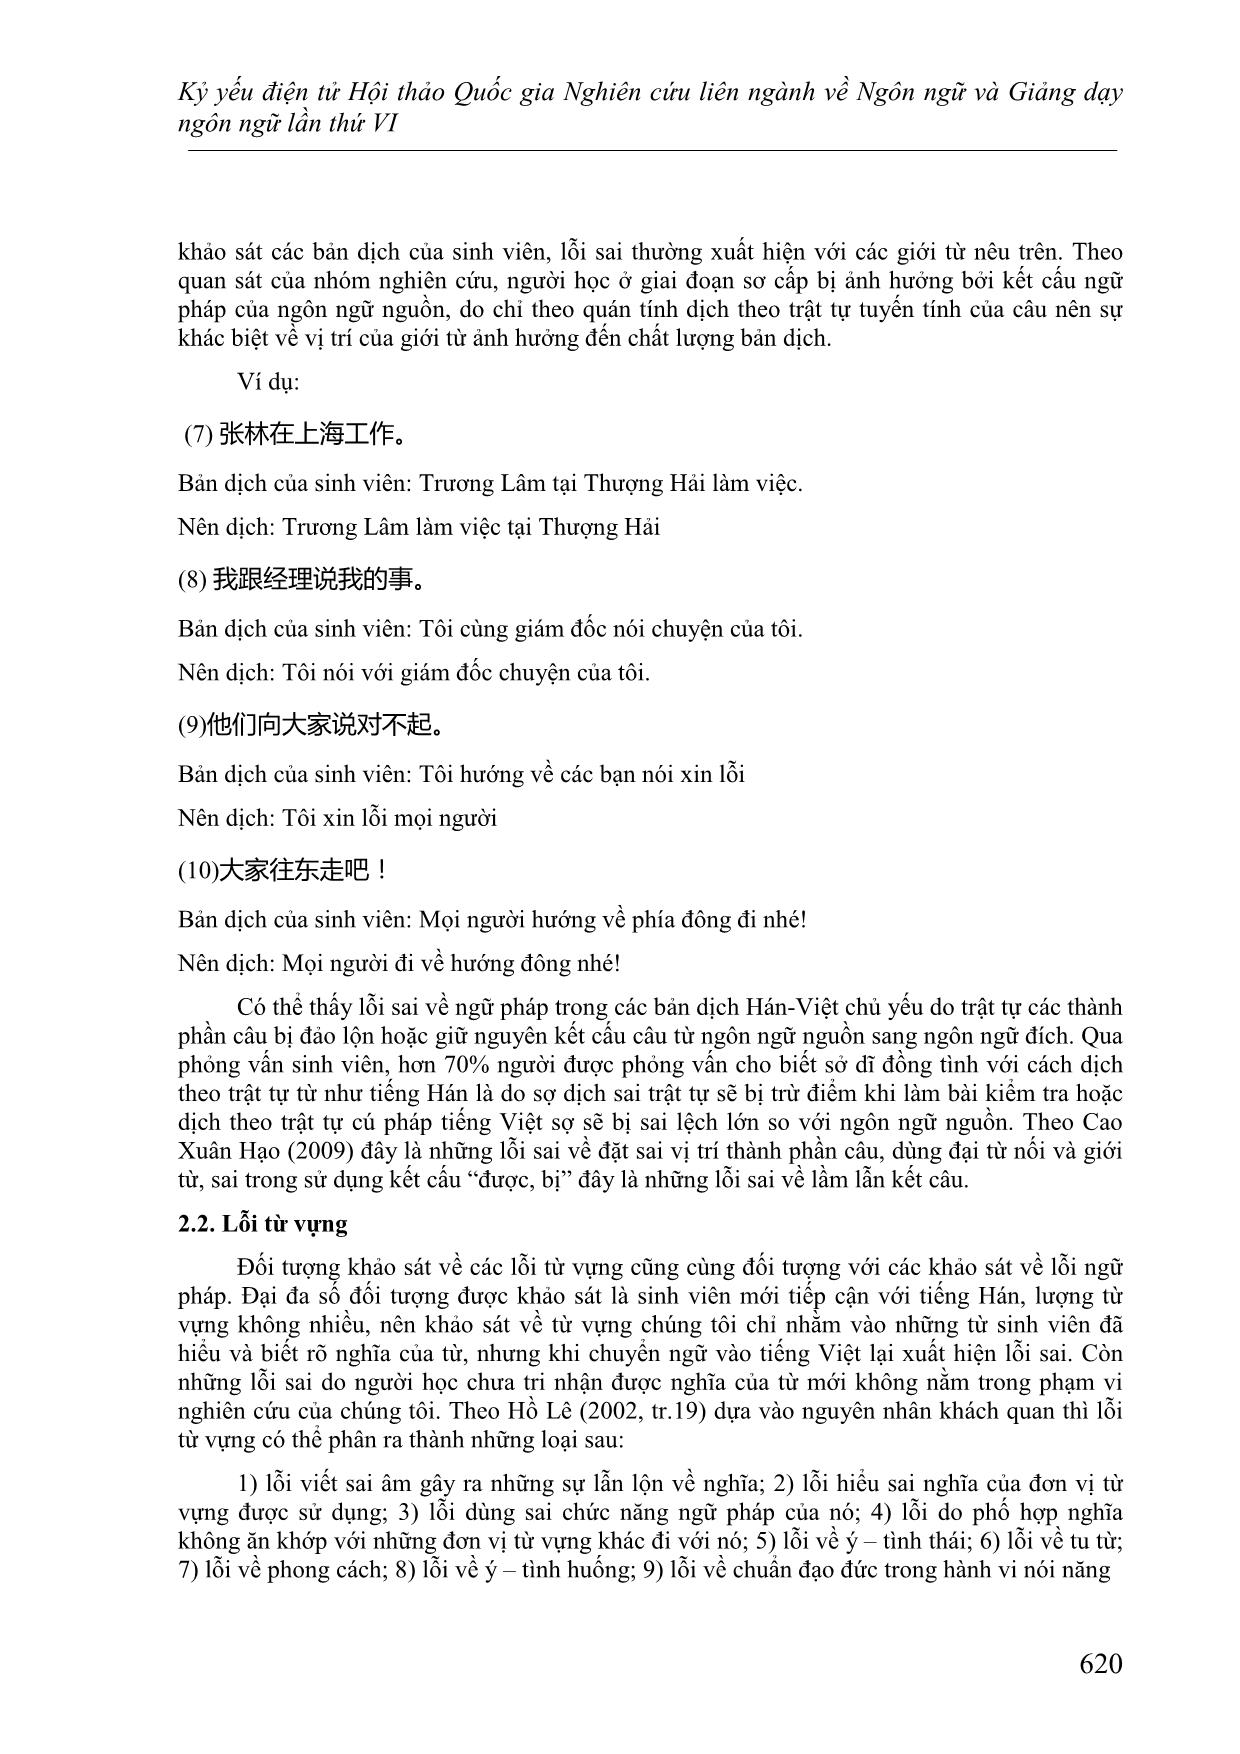 Đề xuất các tiêu chí xác định lỗi ngôn ngữ qua khảo sát các bản dịch từ Hán sang Việt của sinh viên ở trình độ sơ cấp trang 5